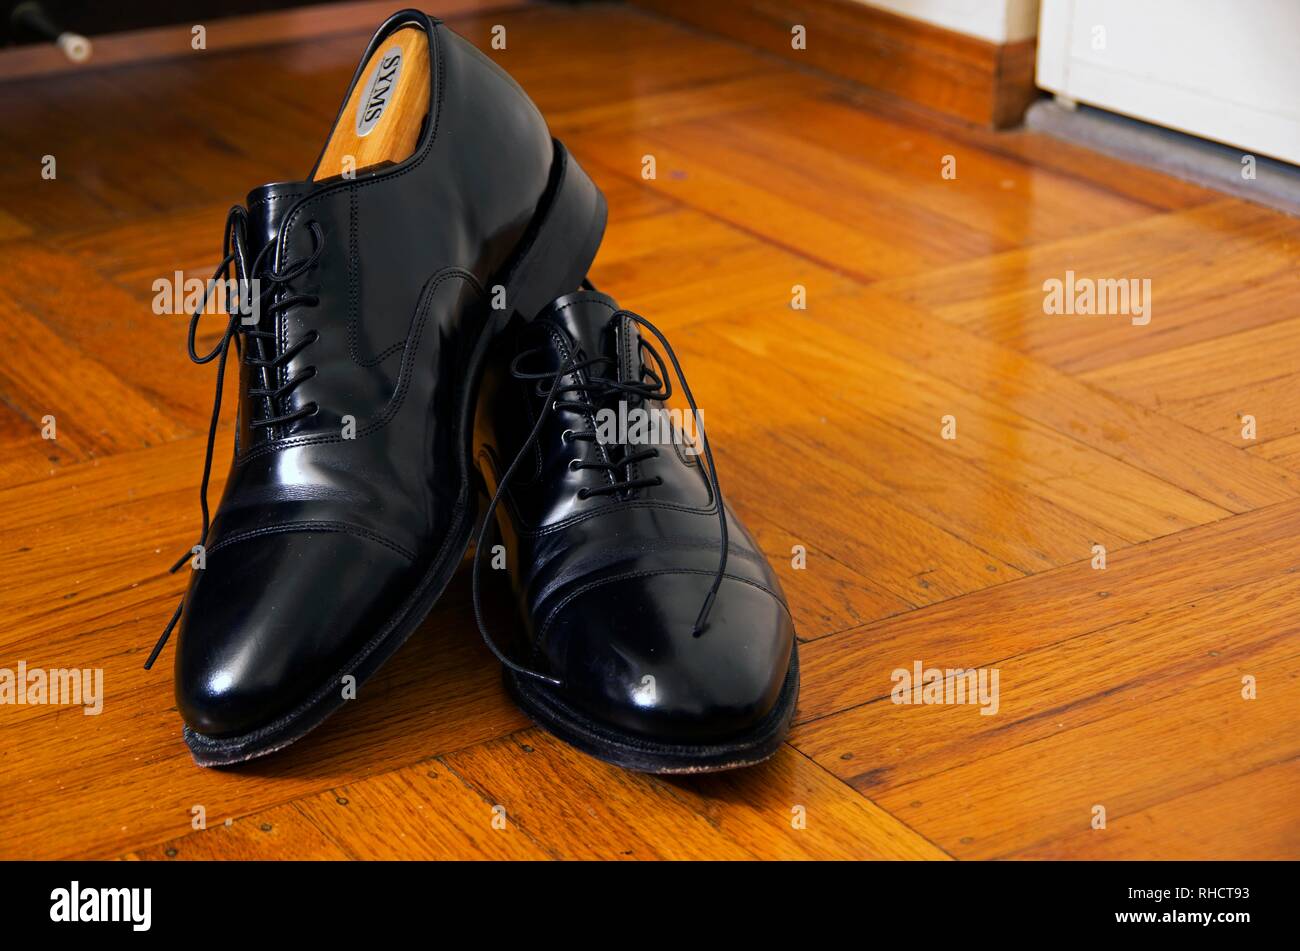 Ces Johnson & Murphy cap toe chaussures sont un bon choix professionnel, de  chaussures à porter au travail Photo Stock - Alamy